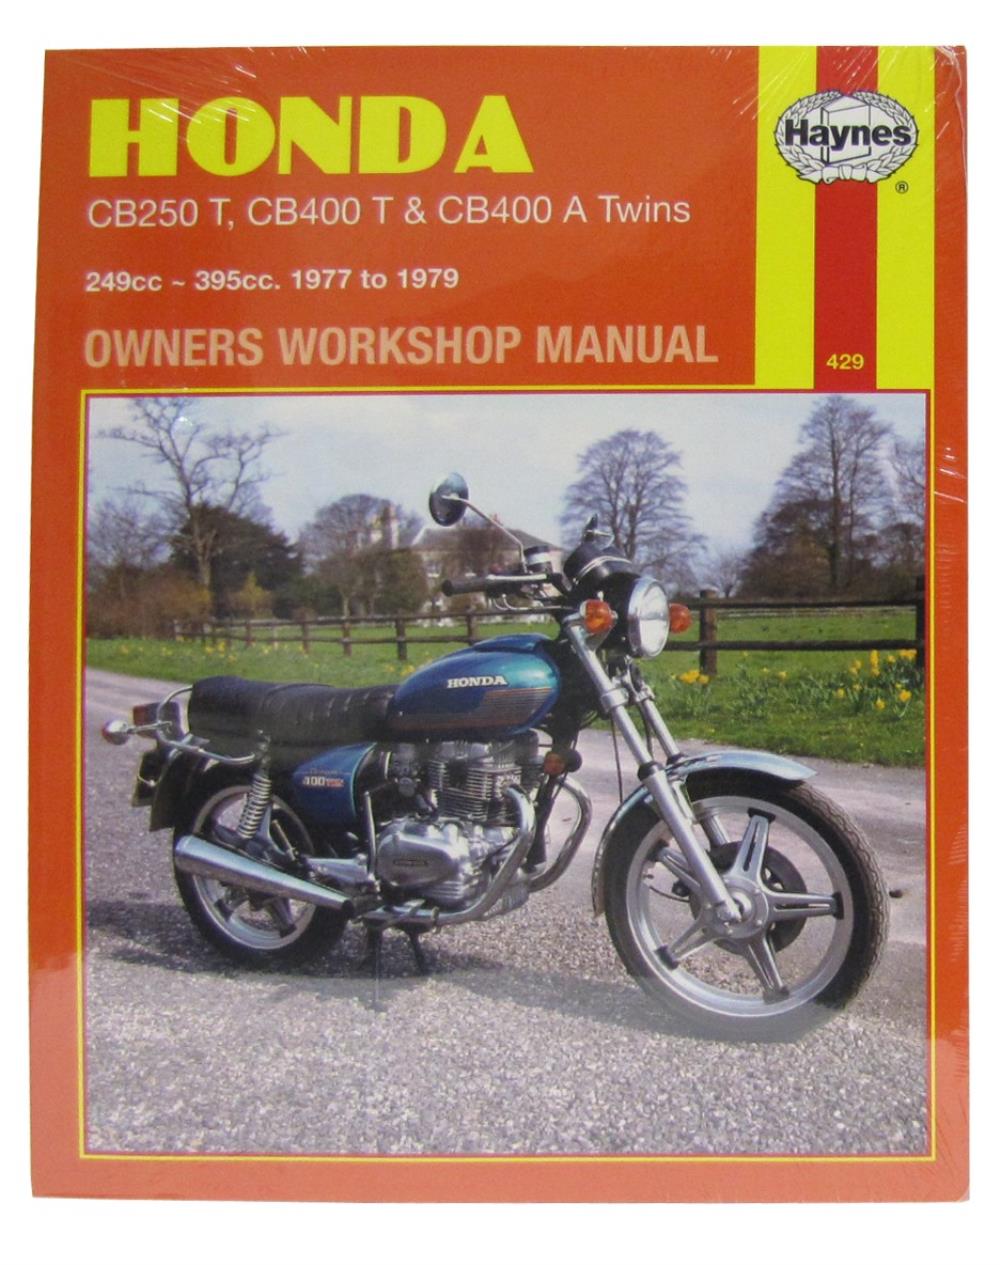 honda cb250n workshop manual pdf